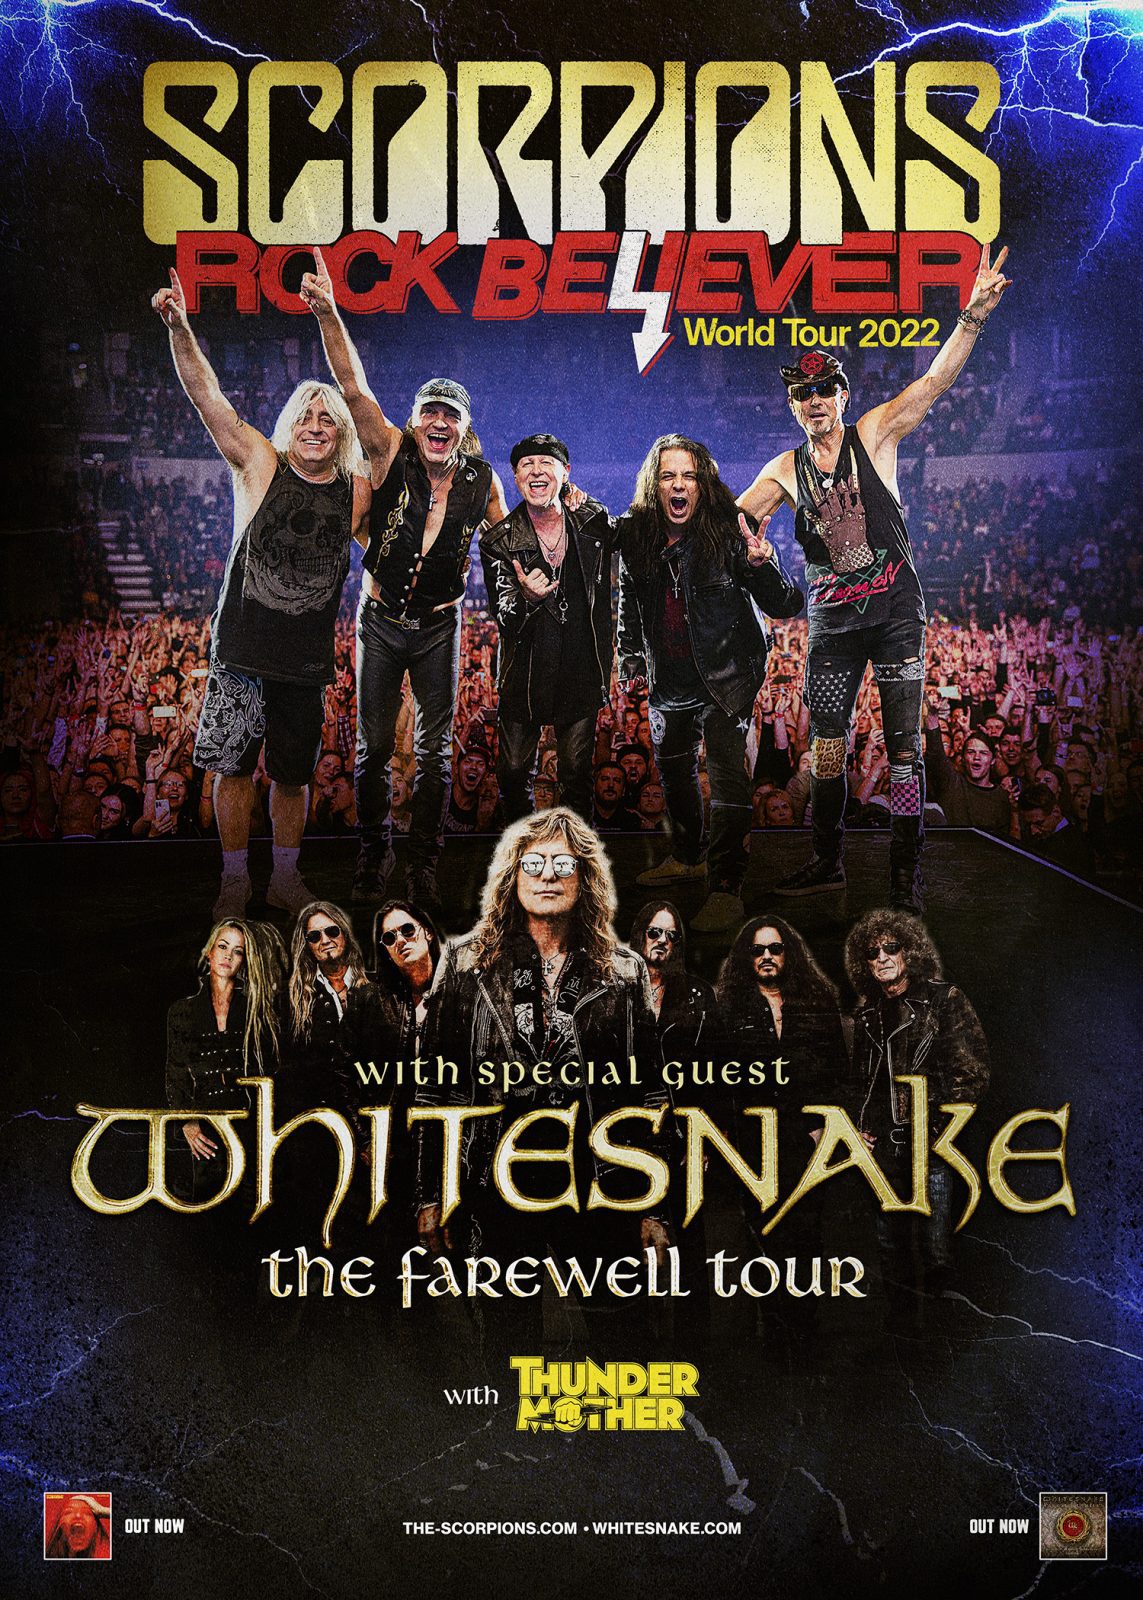 Whitesnake + Scorpions USA 2022 Tour